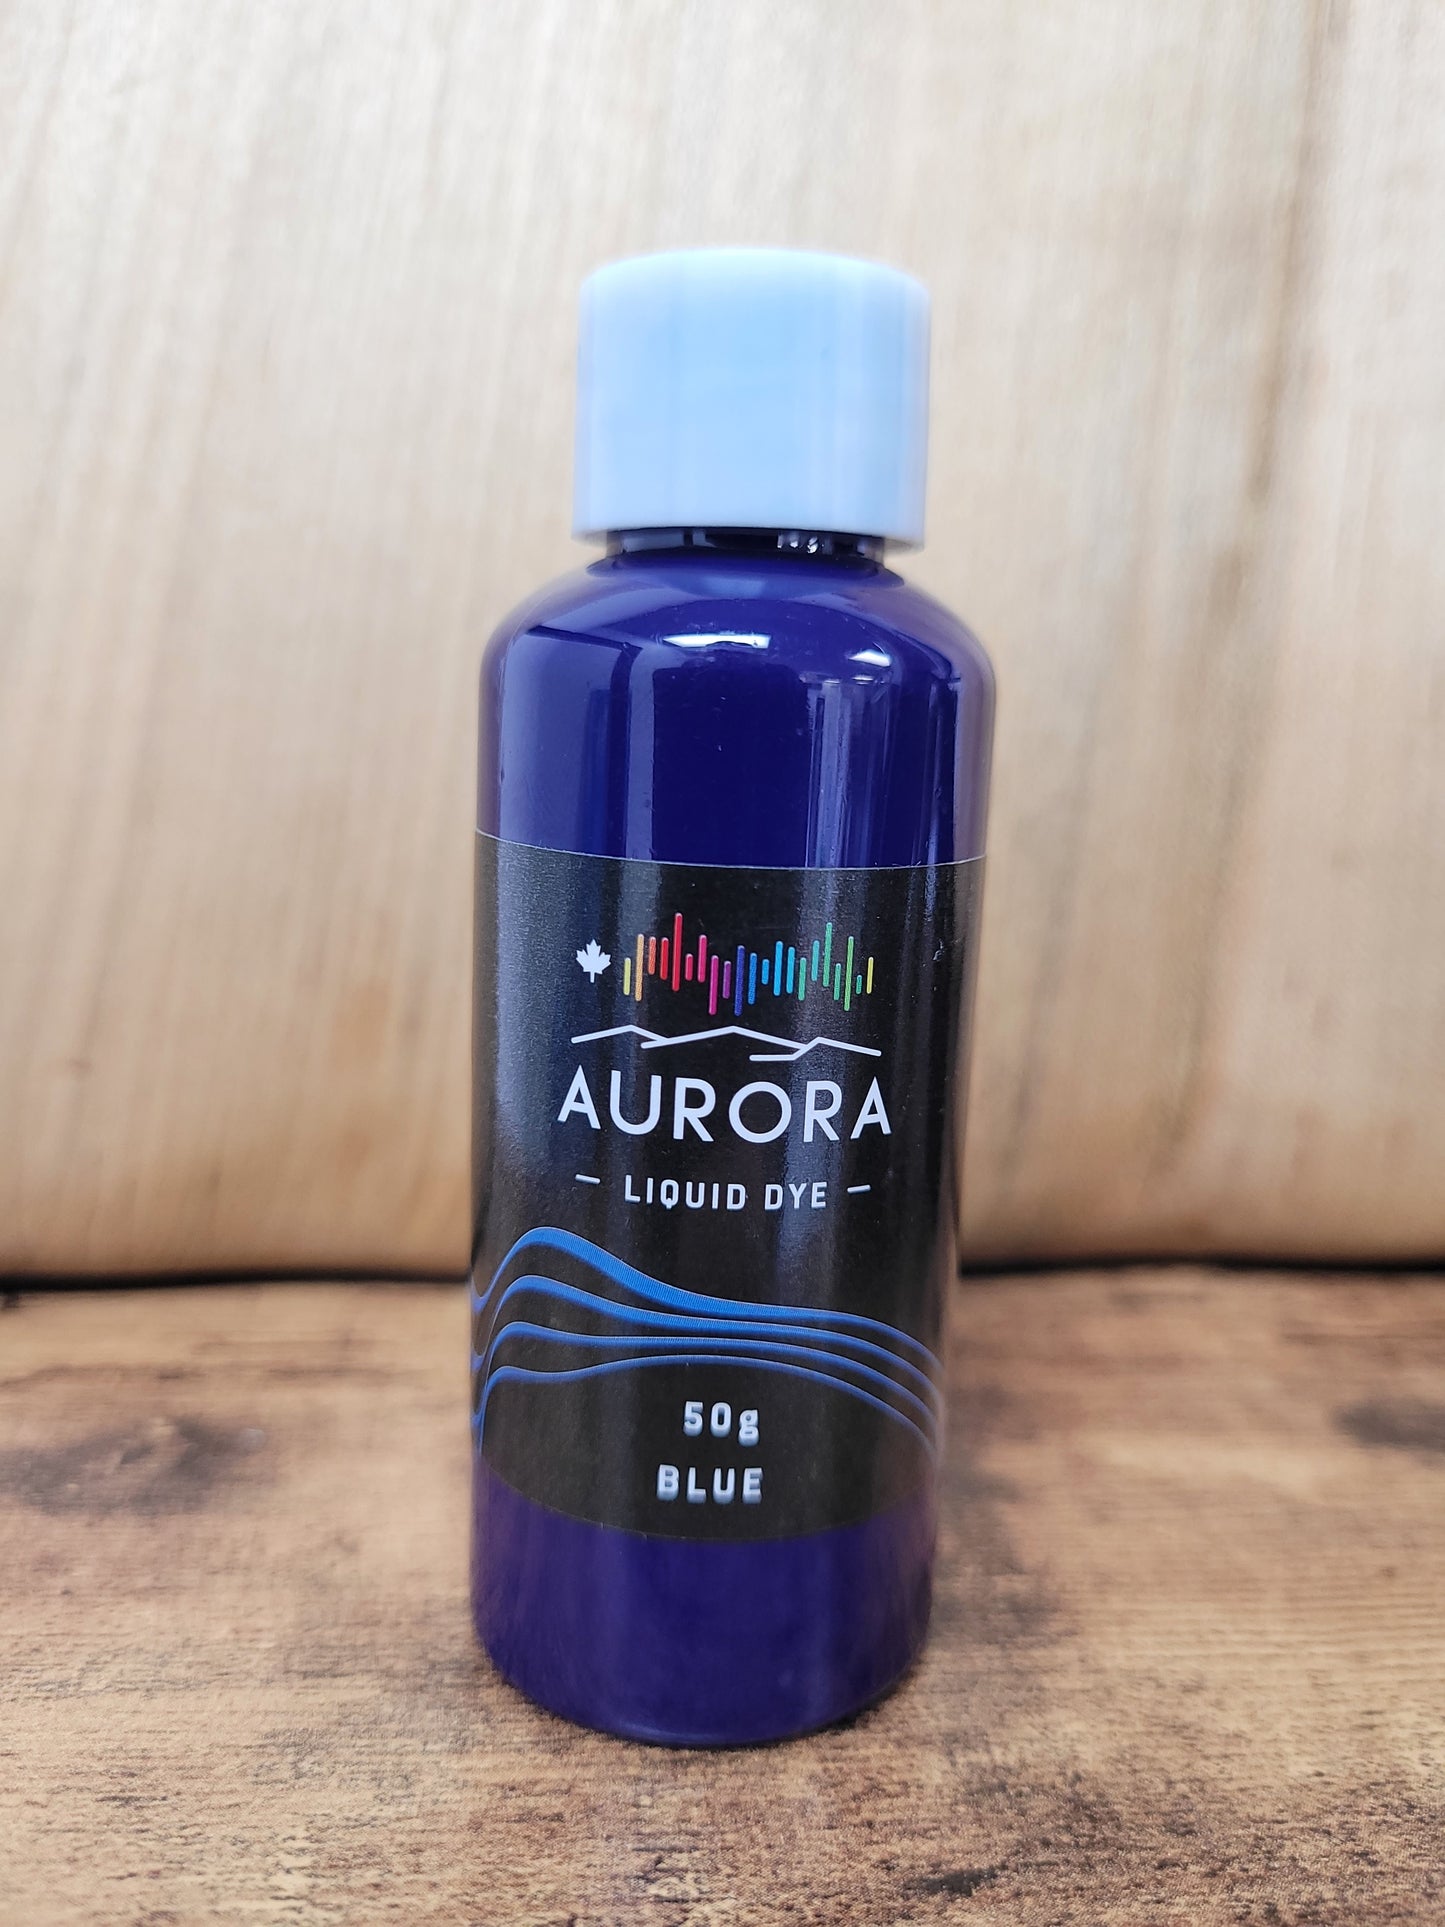 Pigment liquide Aurora 50g